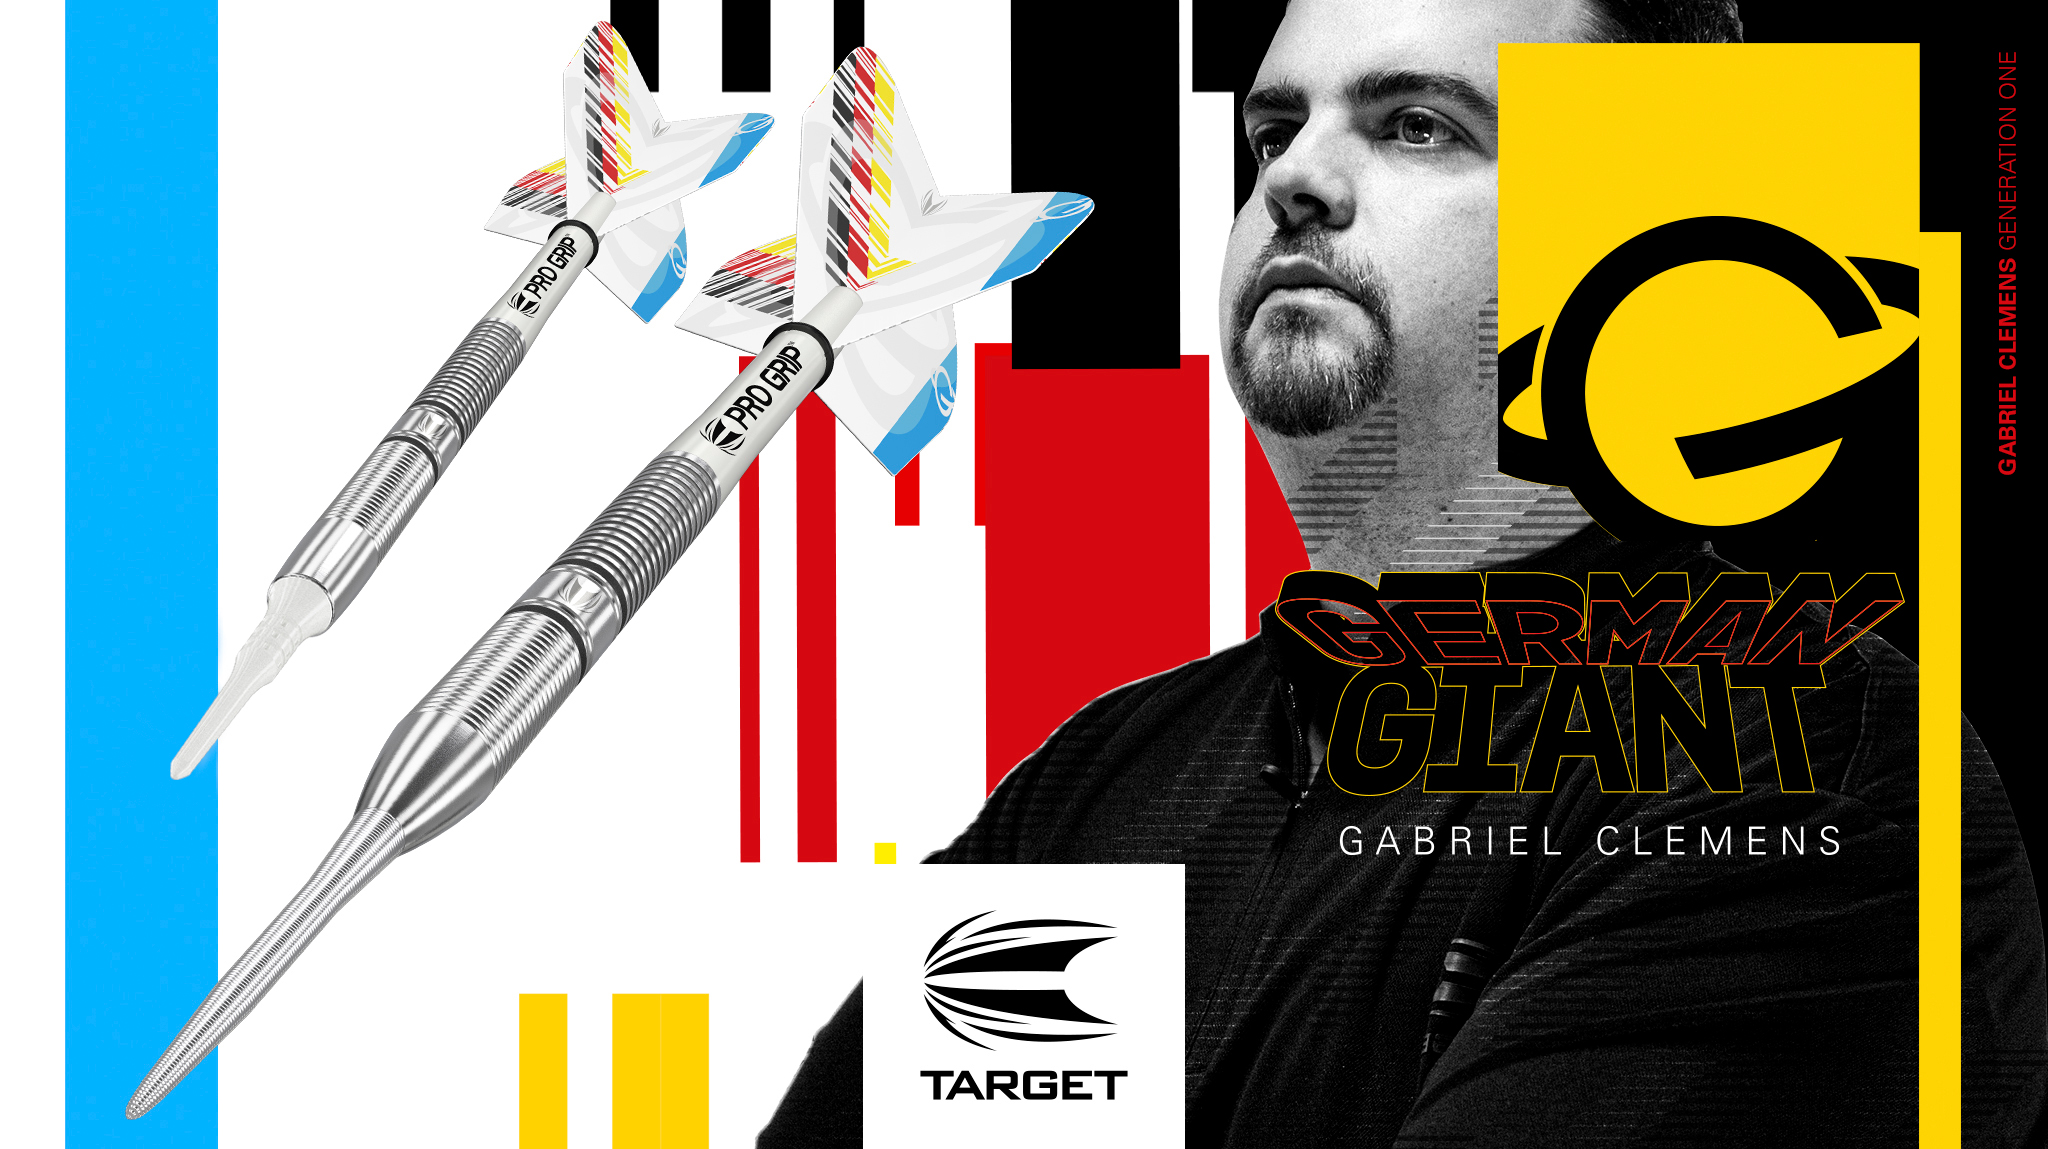 Target Dart neuer Gabriel Clemens Dart Neuheit 2020 im GOKarli Dartshop Launch am 17.7.2020 11 Uhr